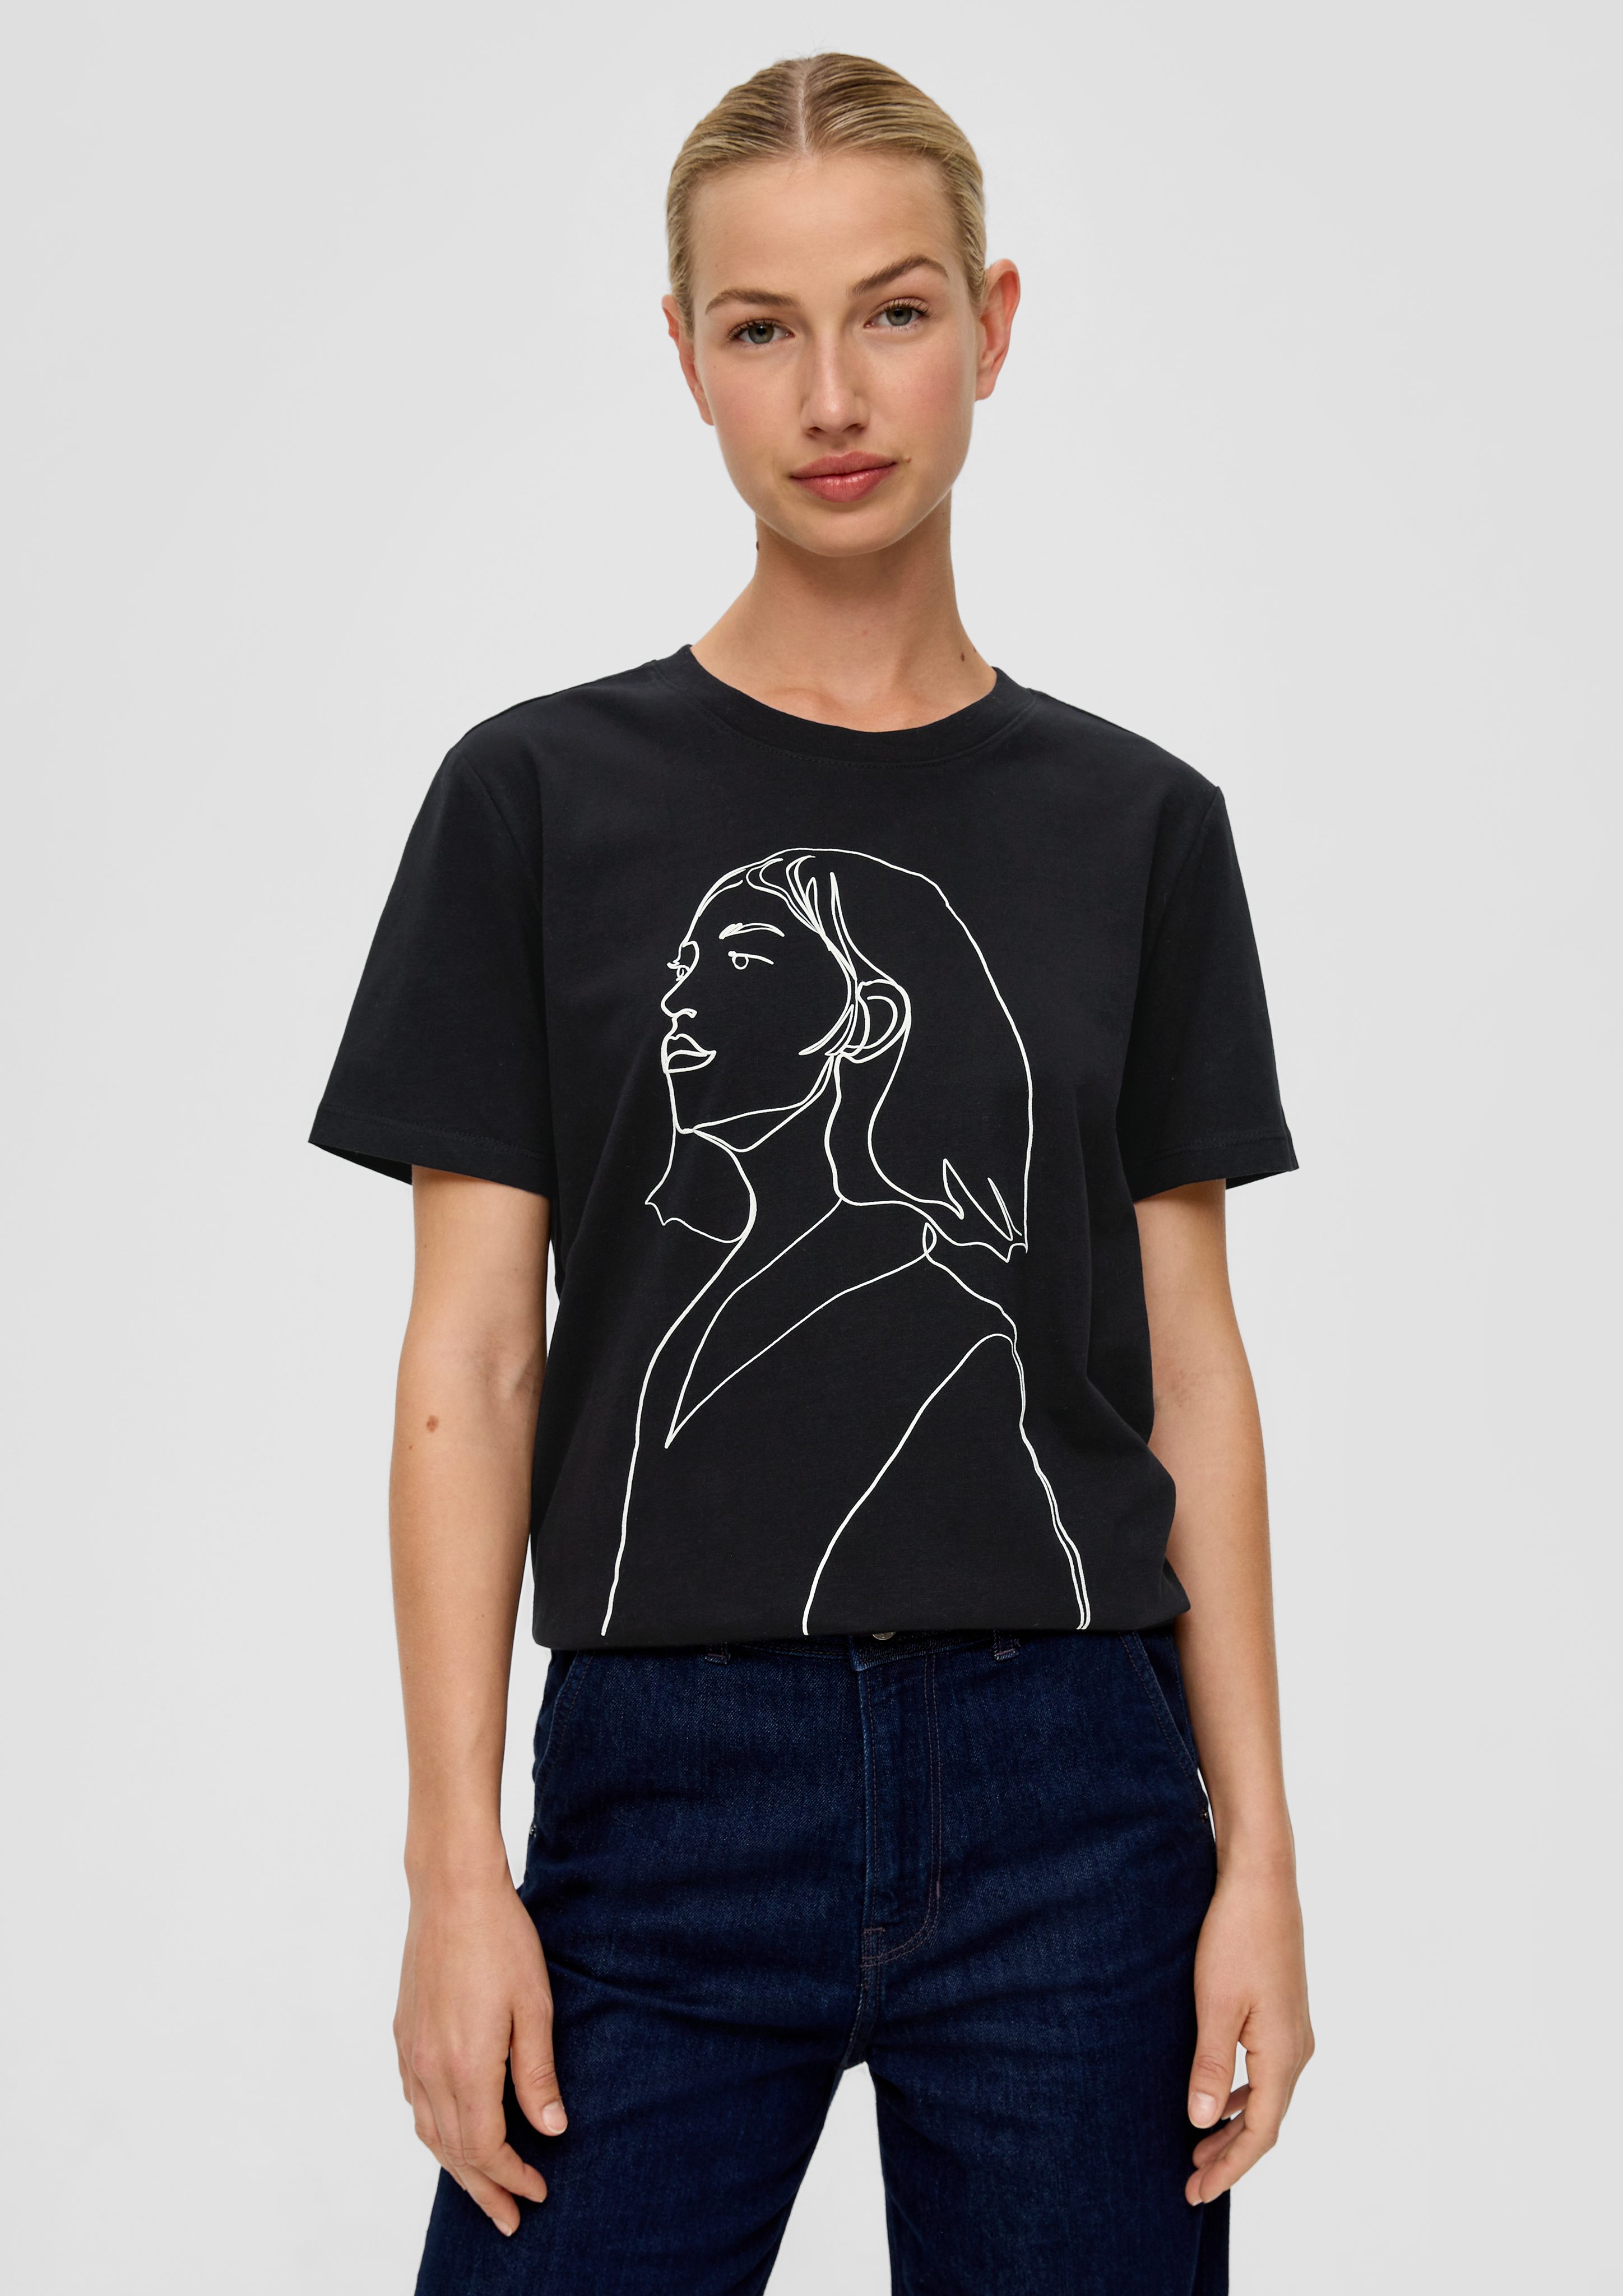 s.Oliver Kurzarmshirt T-Shirt aus Baumwolle Artwork, Logo schwarz